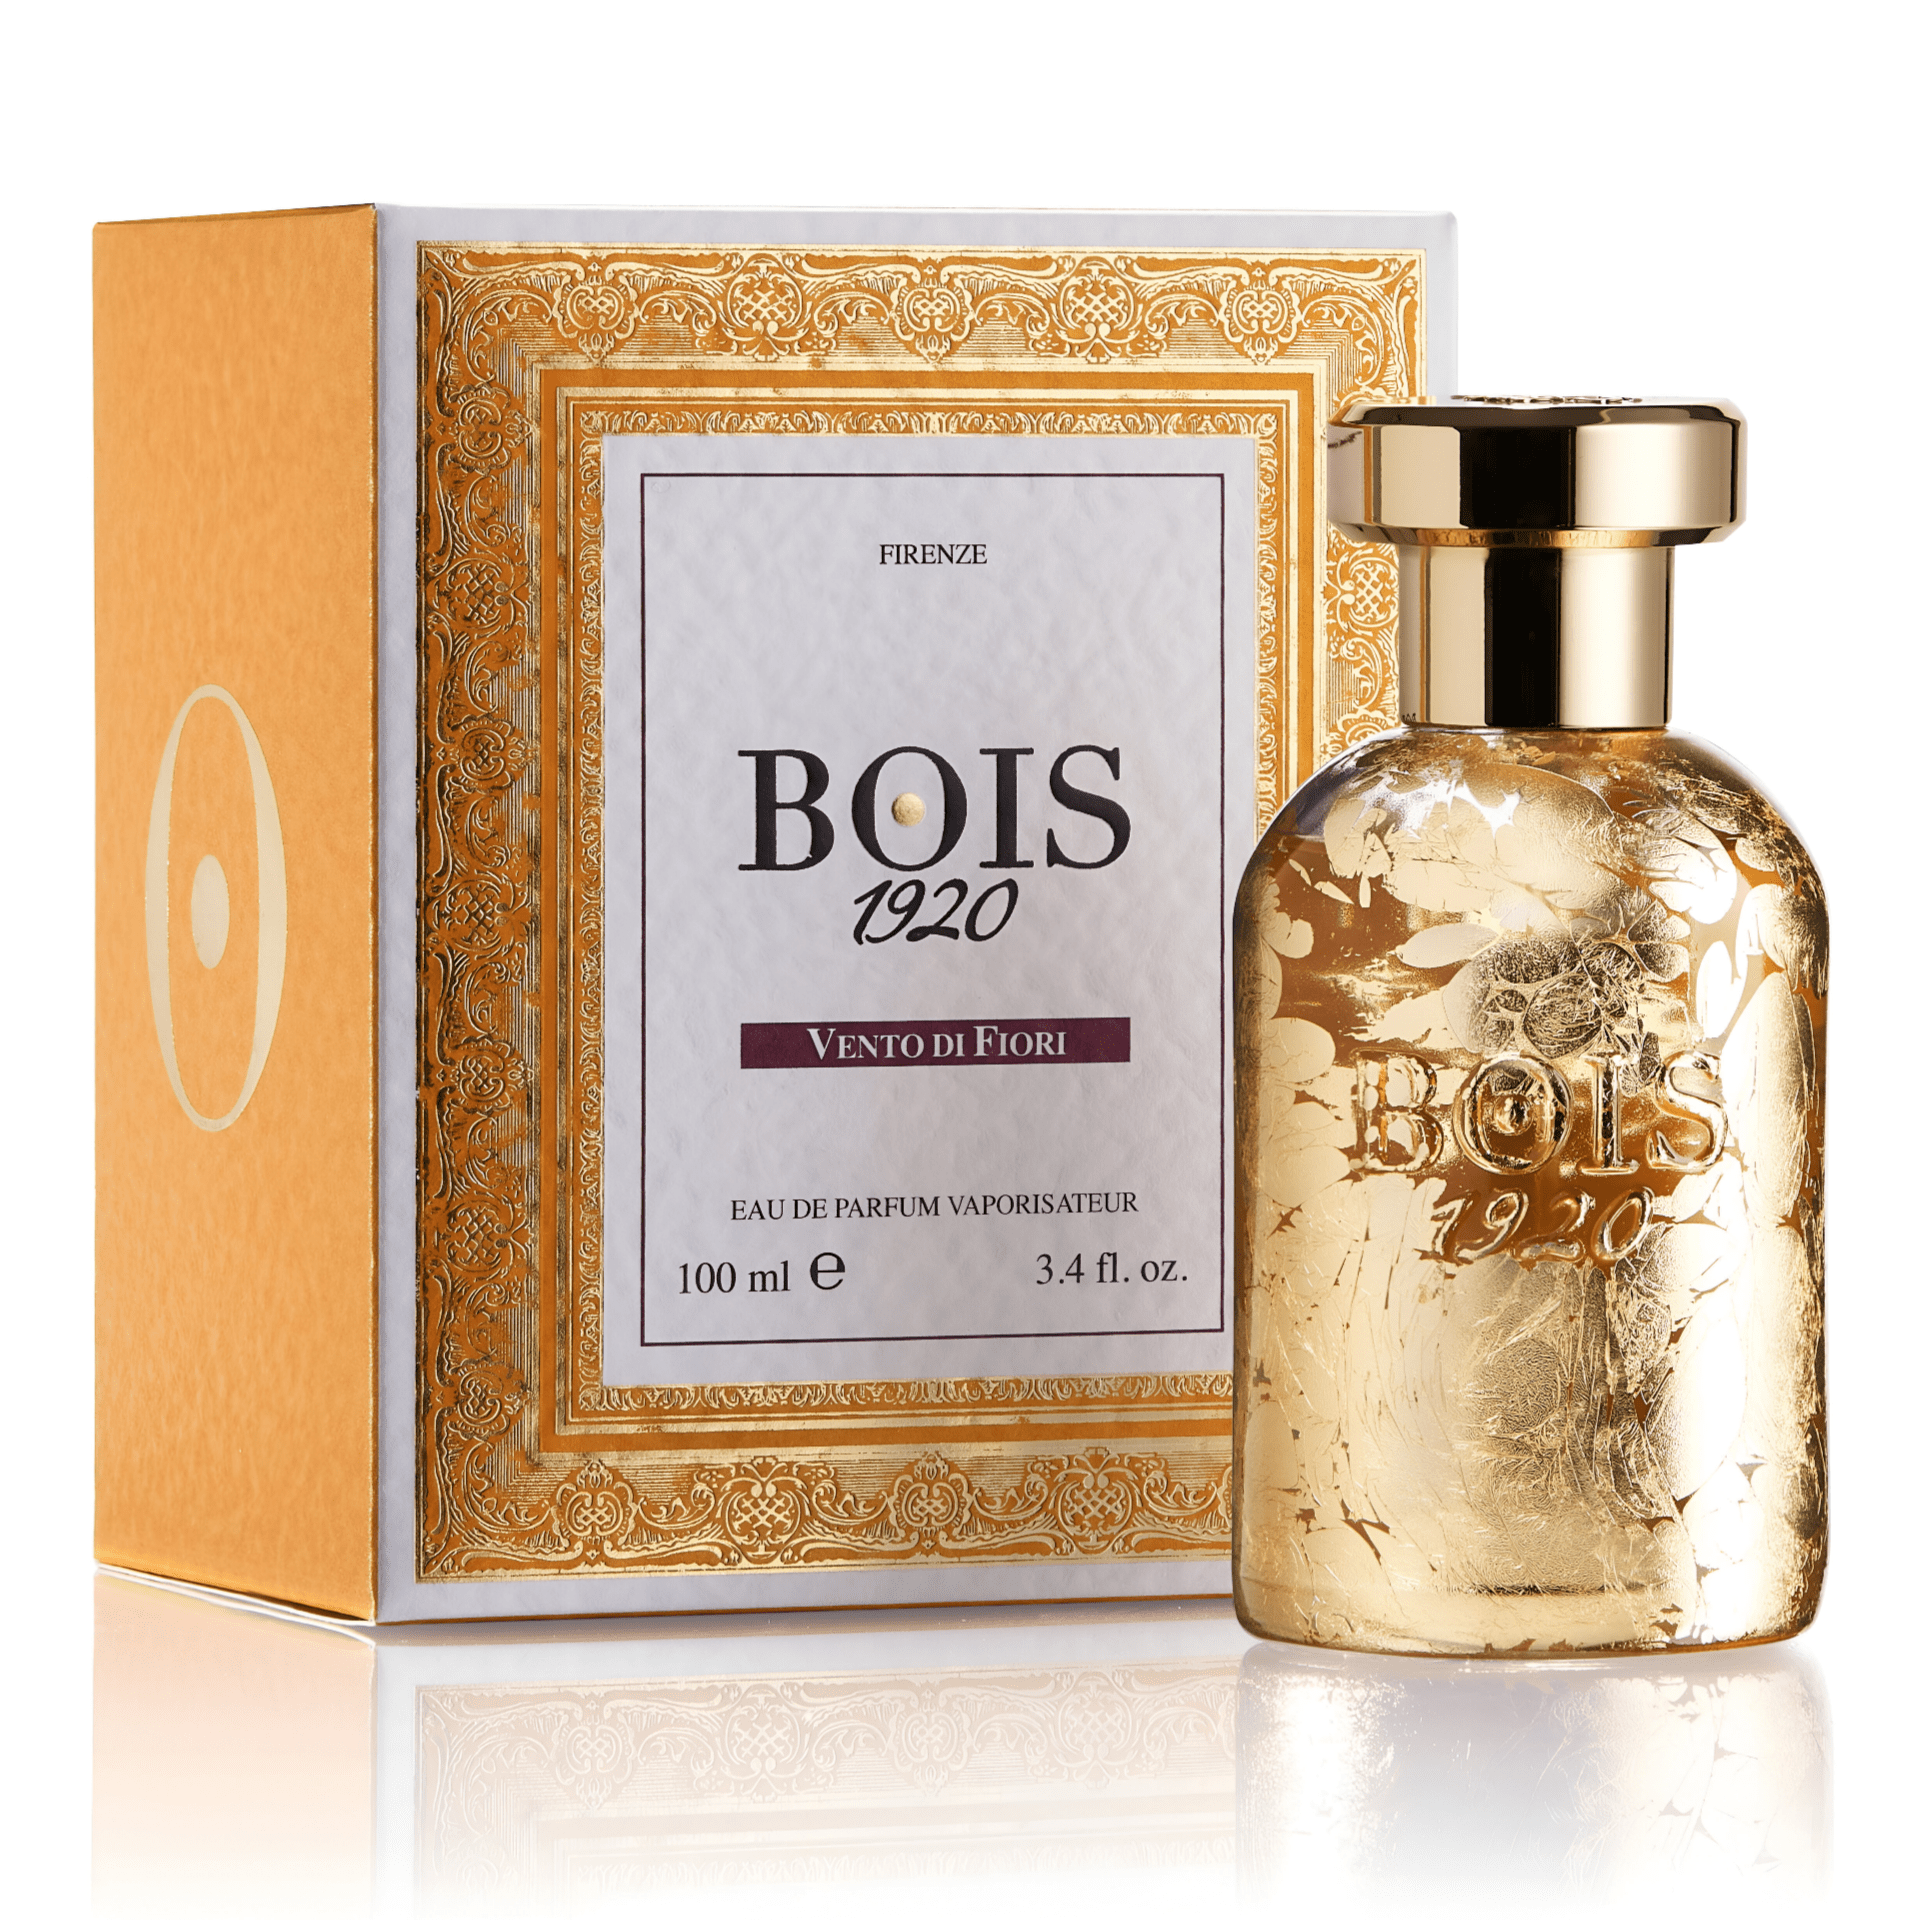 Bois 1920 Vento Di Fiori EDP | My Perfume Shop Australia